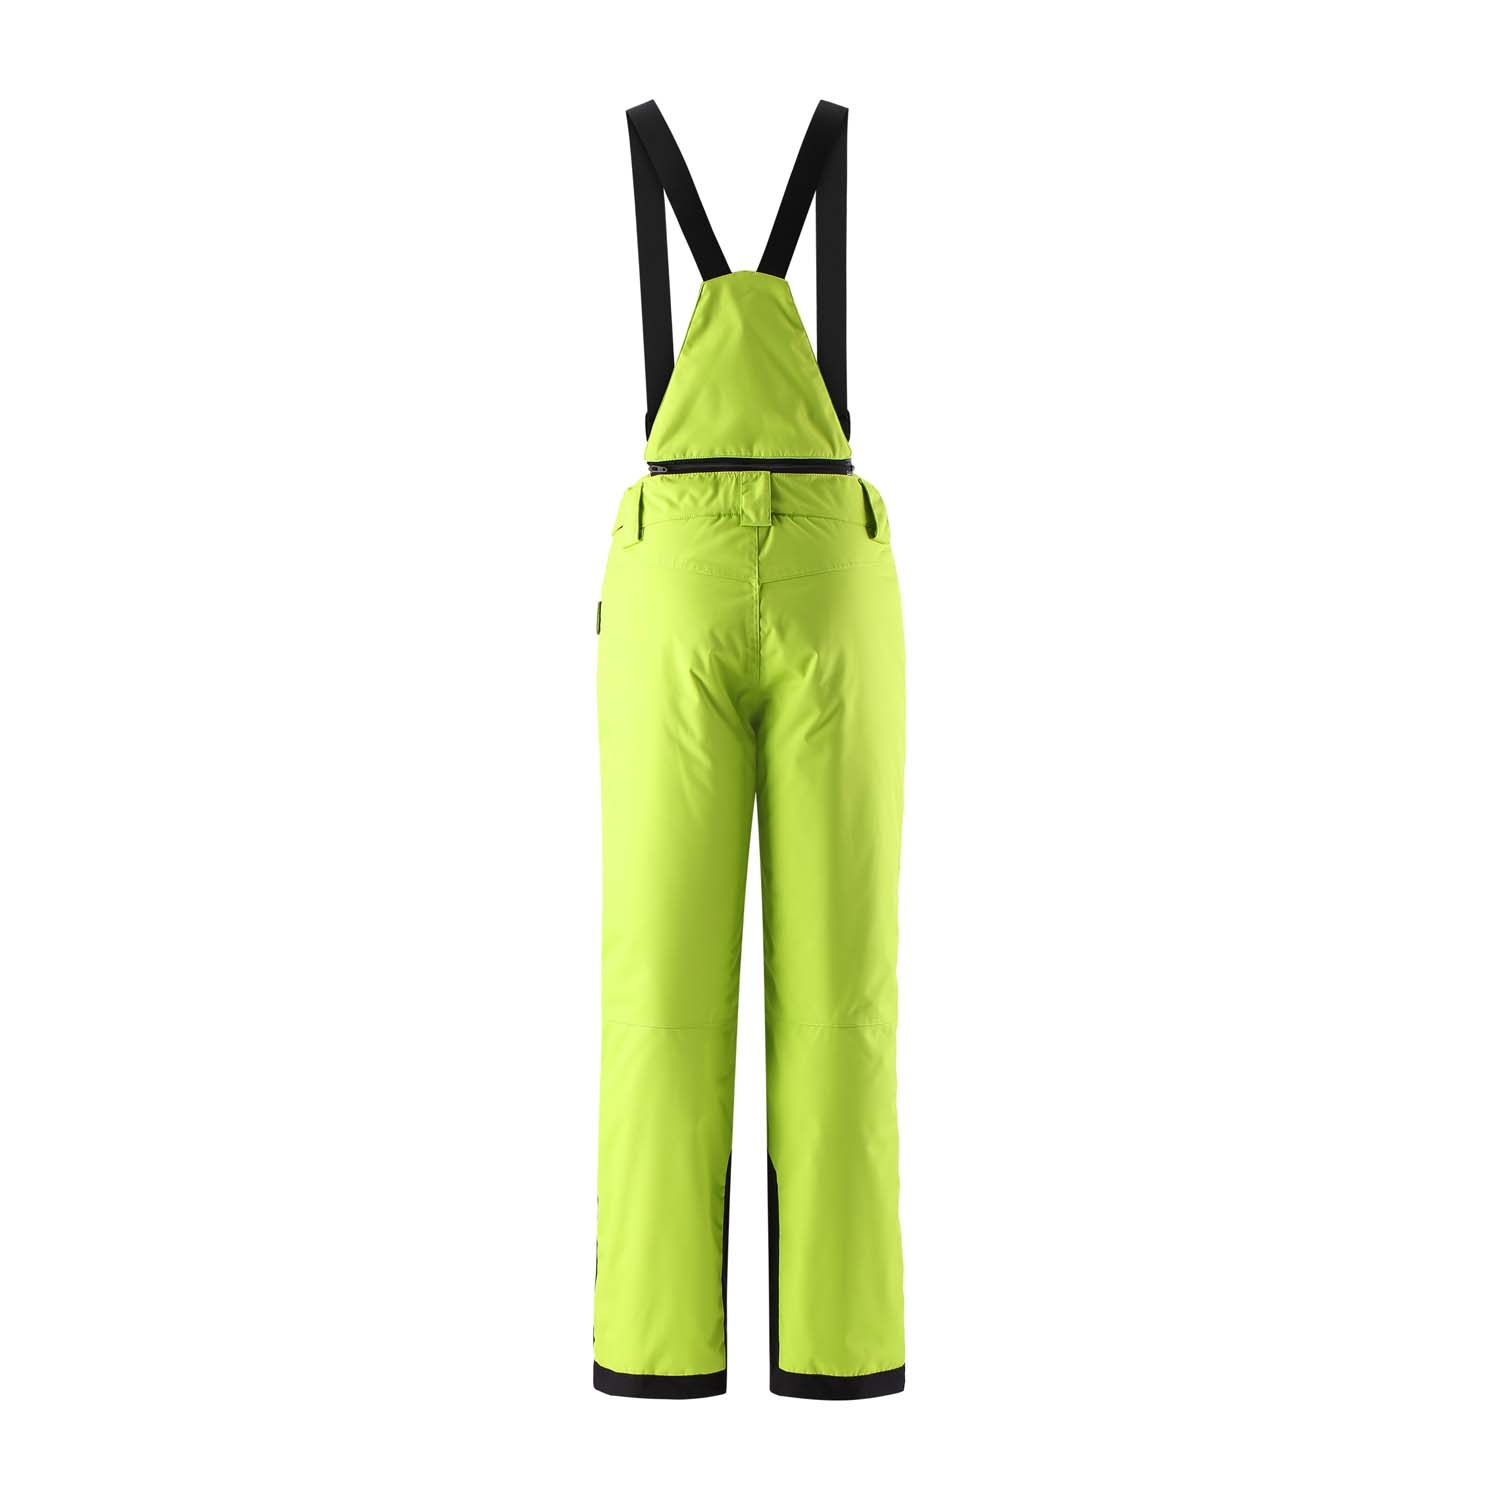 Reima Wingon Ski Pants Lime Green 2021